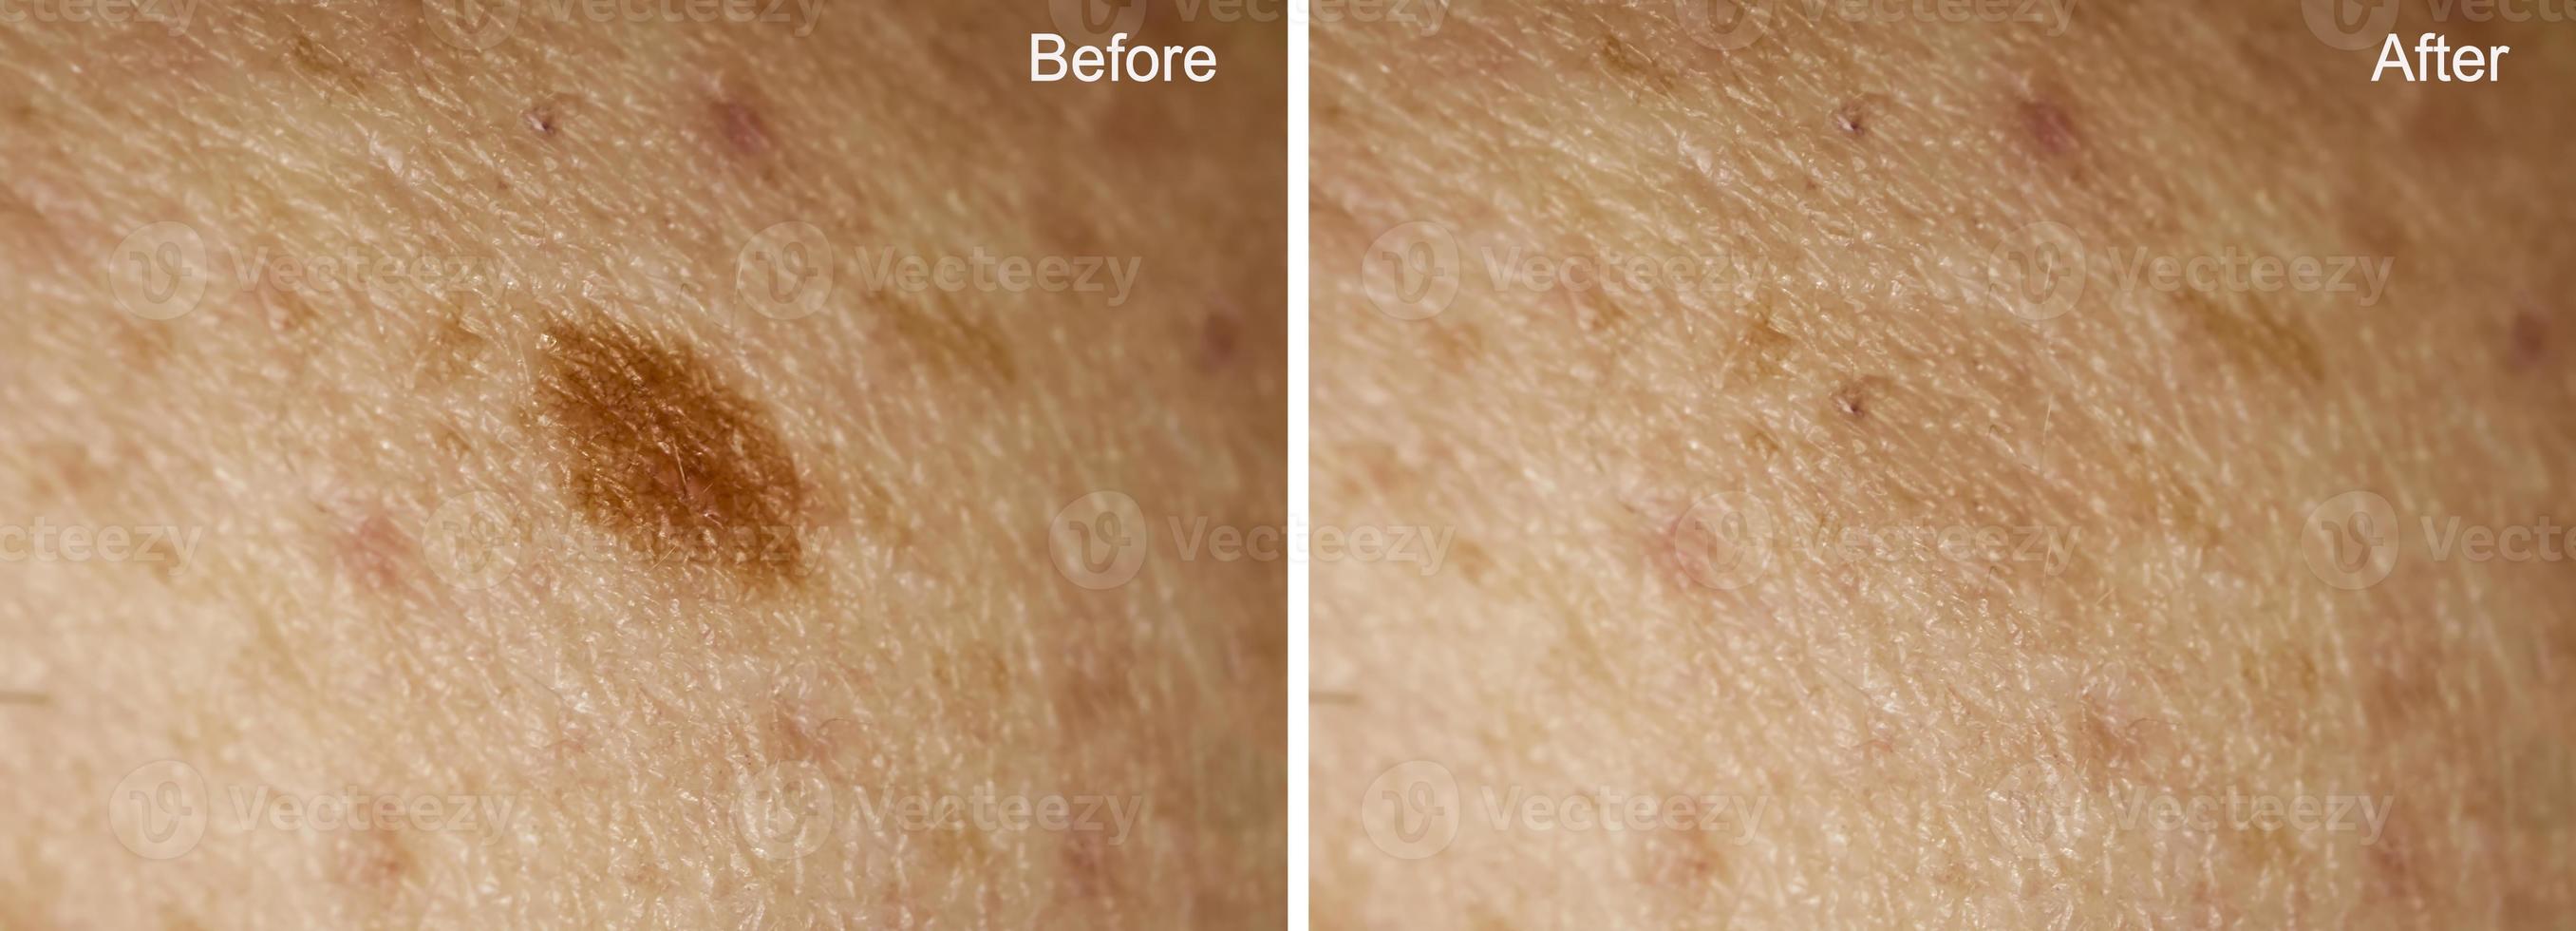 foto antes e depois da remoção de grande verruga na pele da mulher. foco seletivo. conceito de remoção de toupeira